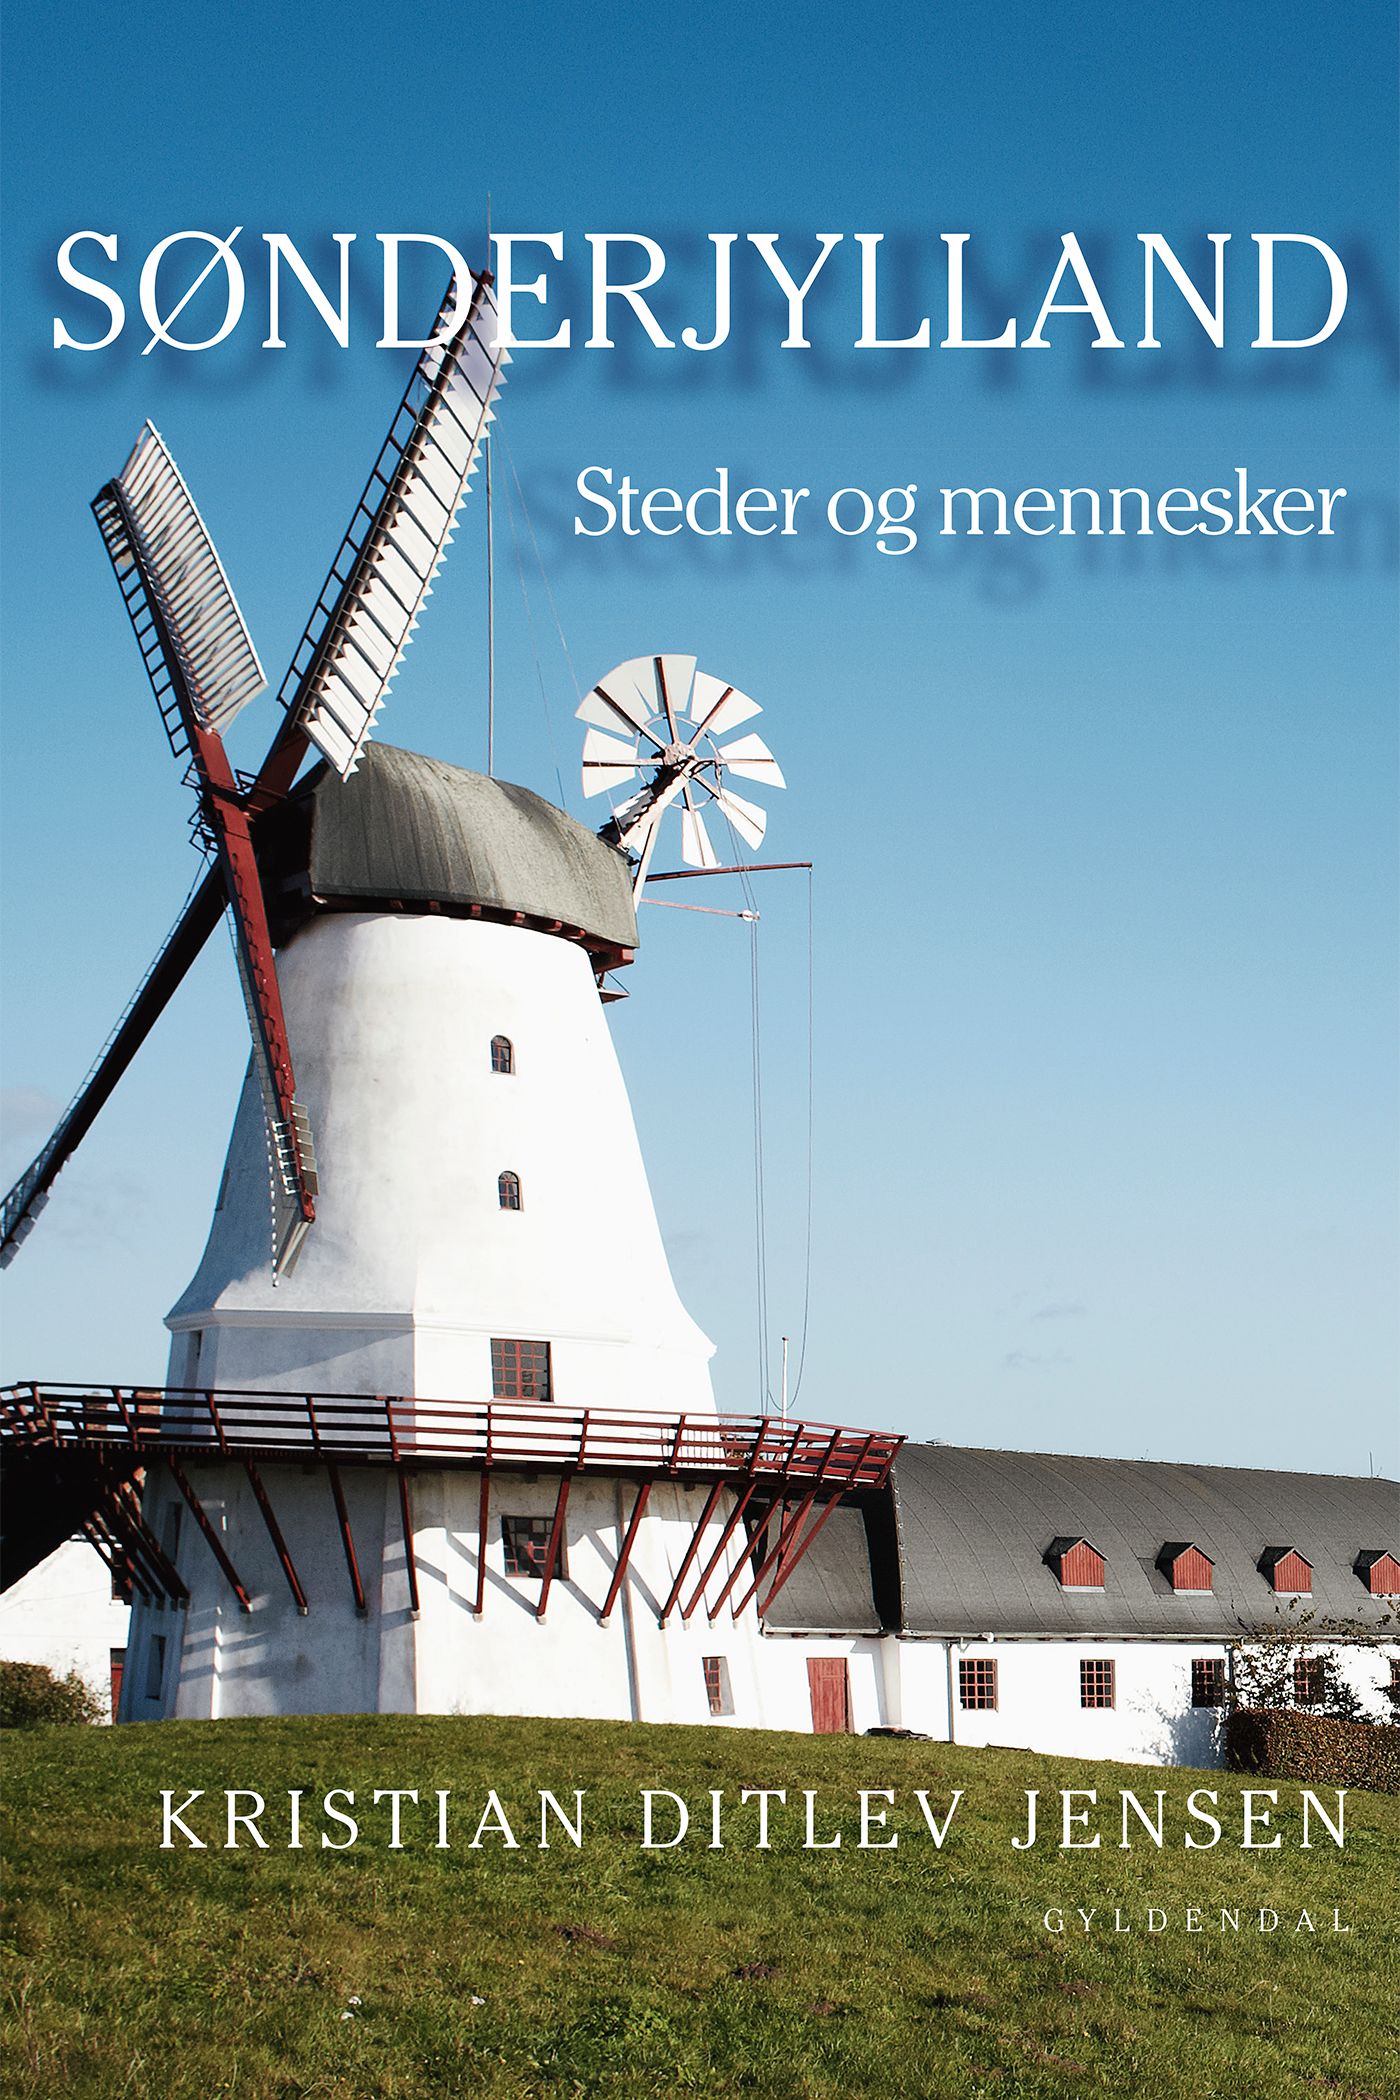 Sønderjylland, e-bok av Kristian Ditlev Jensen